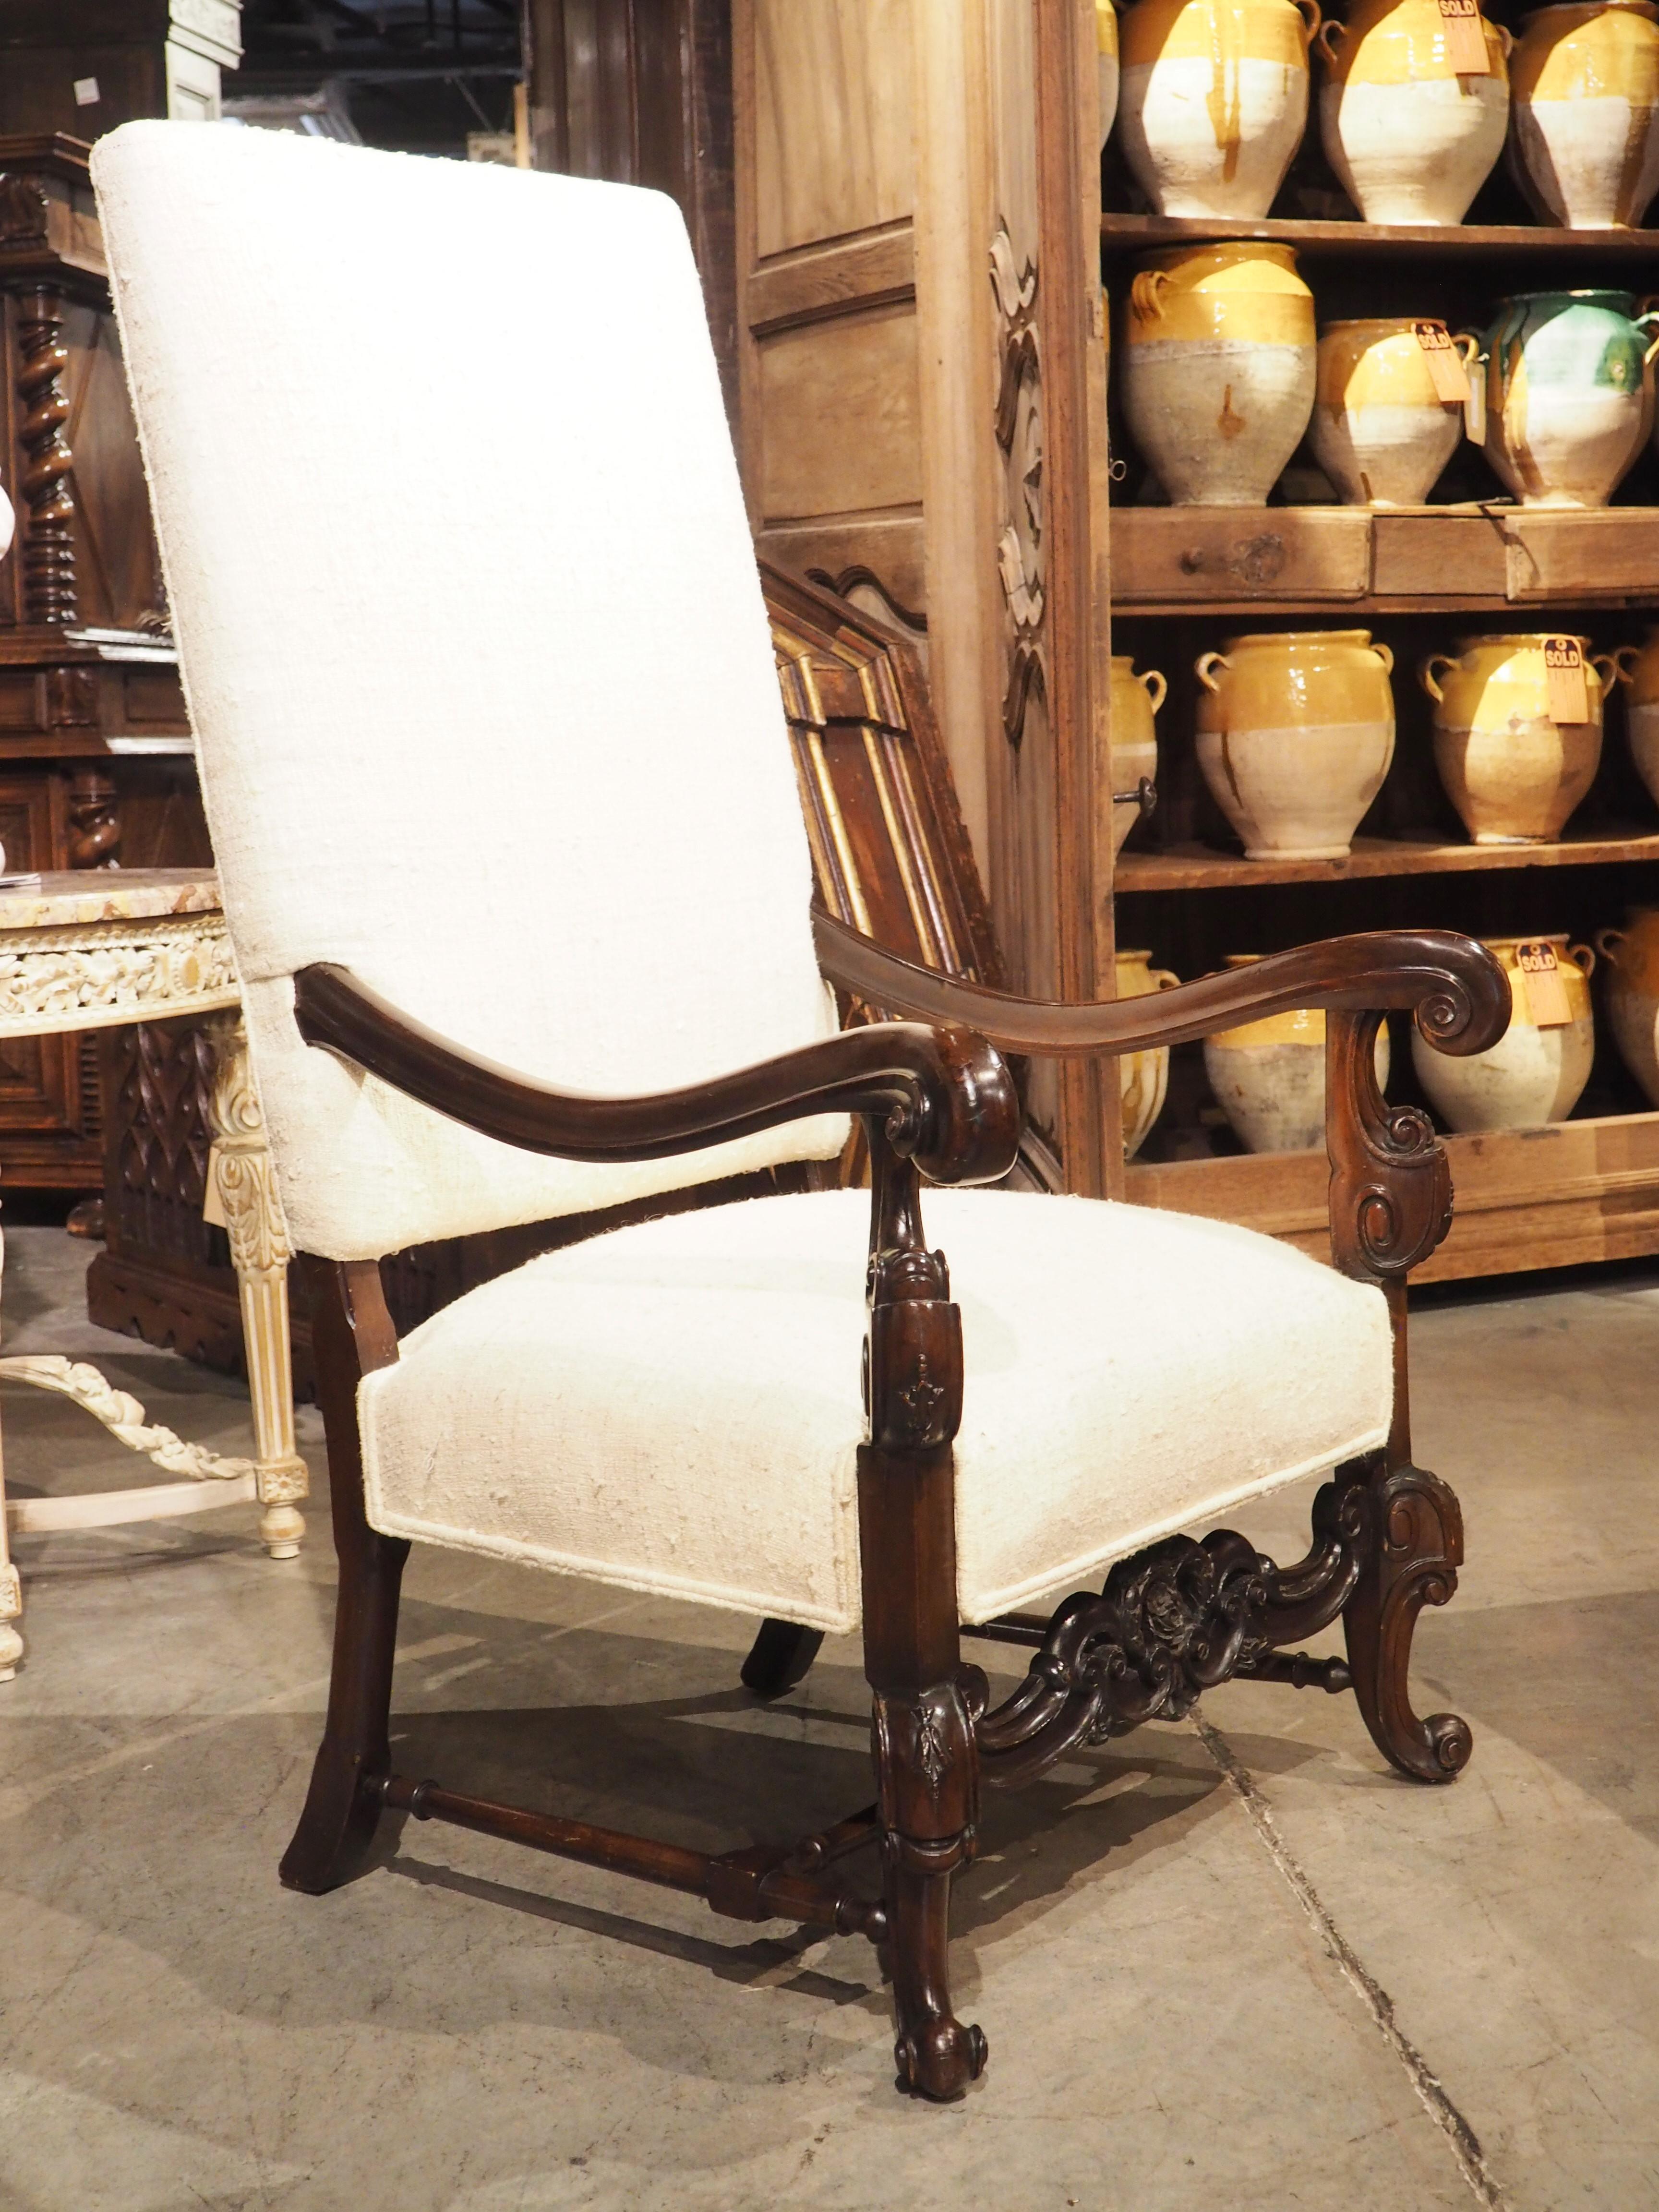 Der hochdekorative Charakter von Barockmöbeln kommt bei diesem Set aus geschnitzten Sesseln mit Rohseidenbezug besonders zur Geltung. Obwohl es sich nicht um ein echtes Paar handelt (die geschnitzten Elemente unterscheiden sich deutlich), wurden die